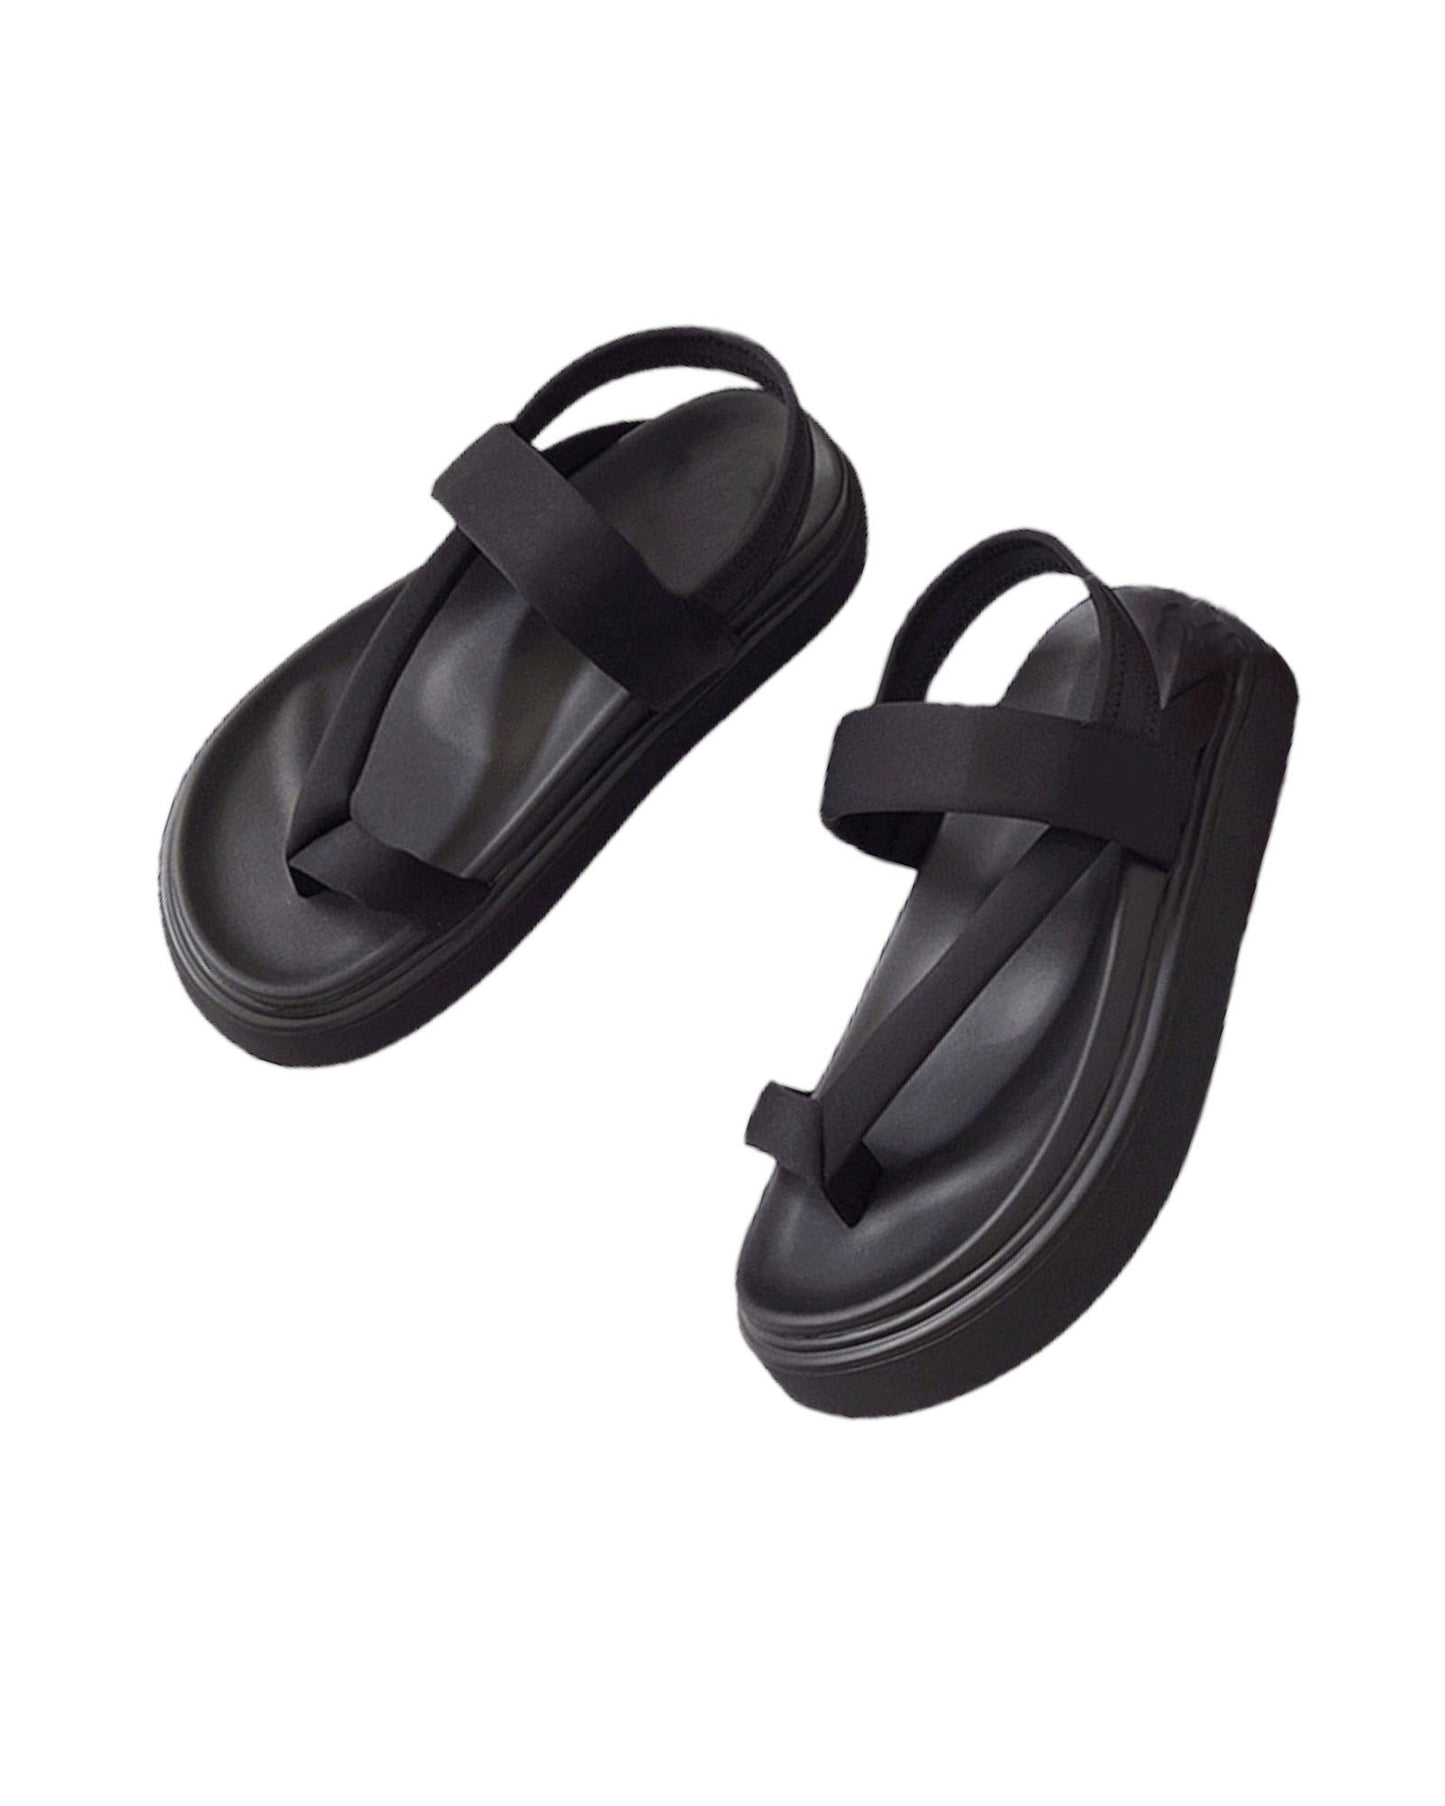 black neoprene strappy sandals *pre-order*